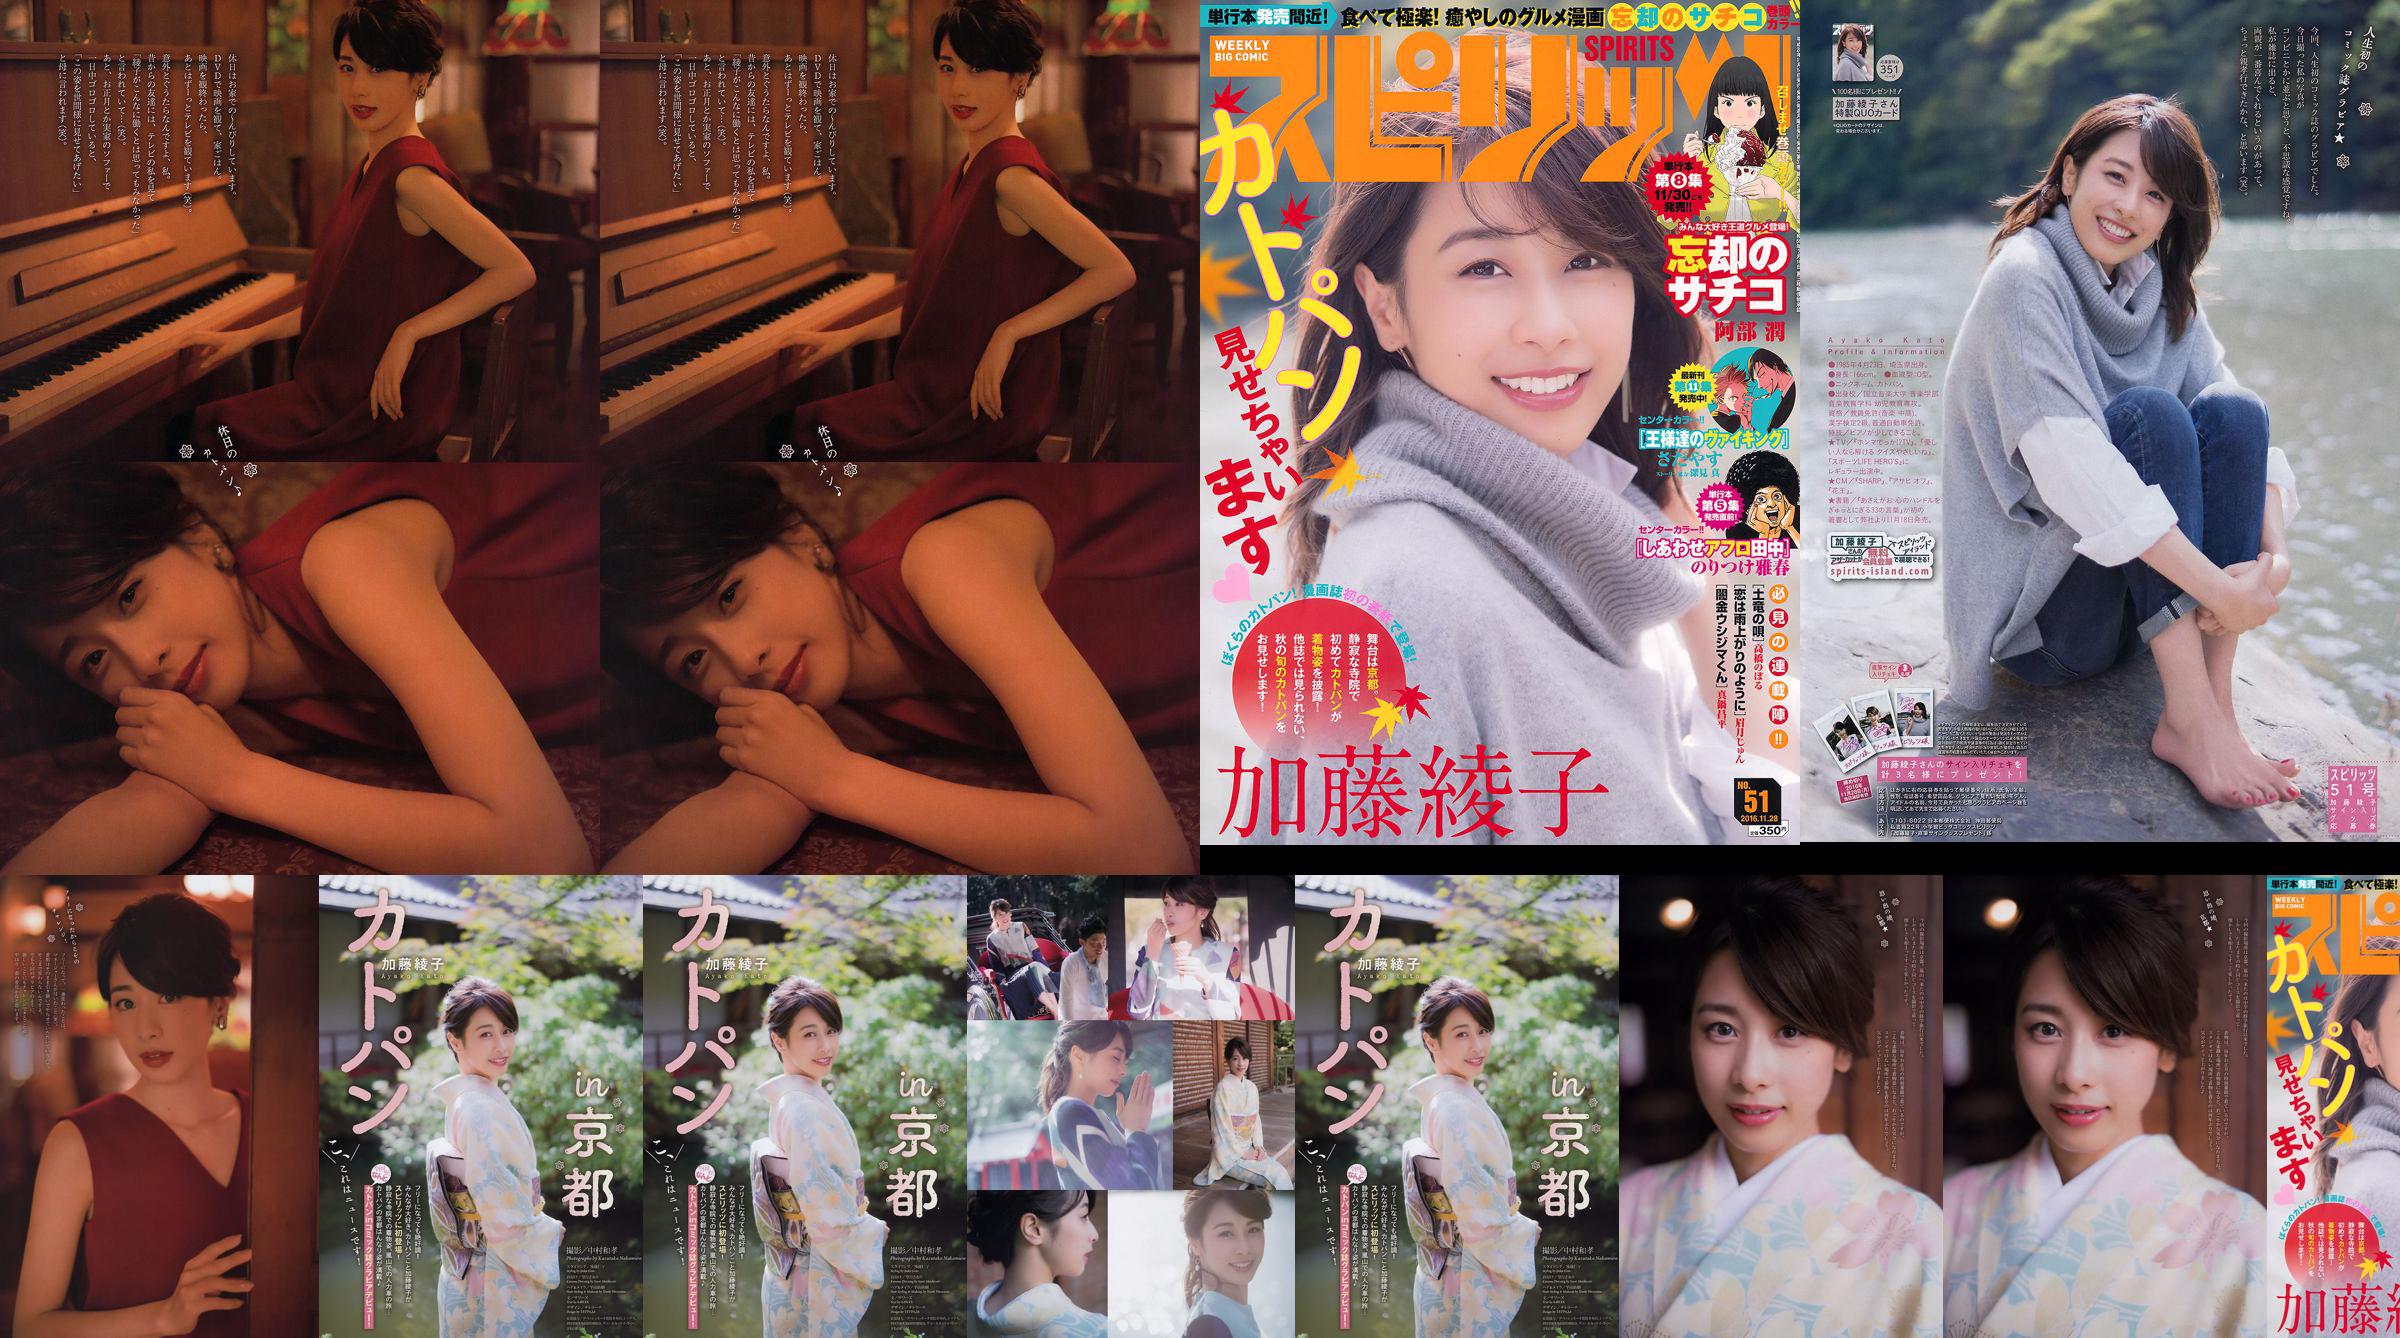 [Weekly Big Comic Spirits] Ayako Kato 2016 No.51 Photo Magazine No.68ff22 Pagina 3